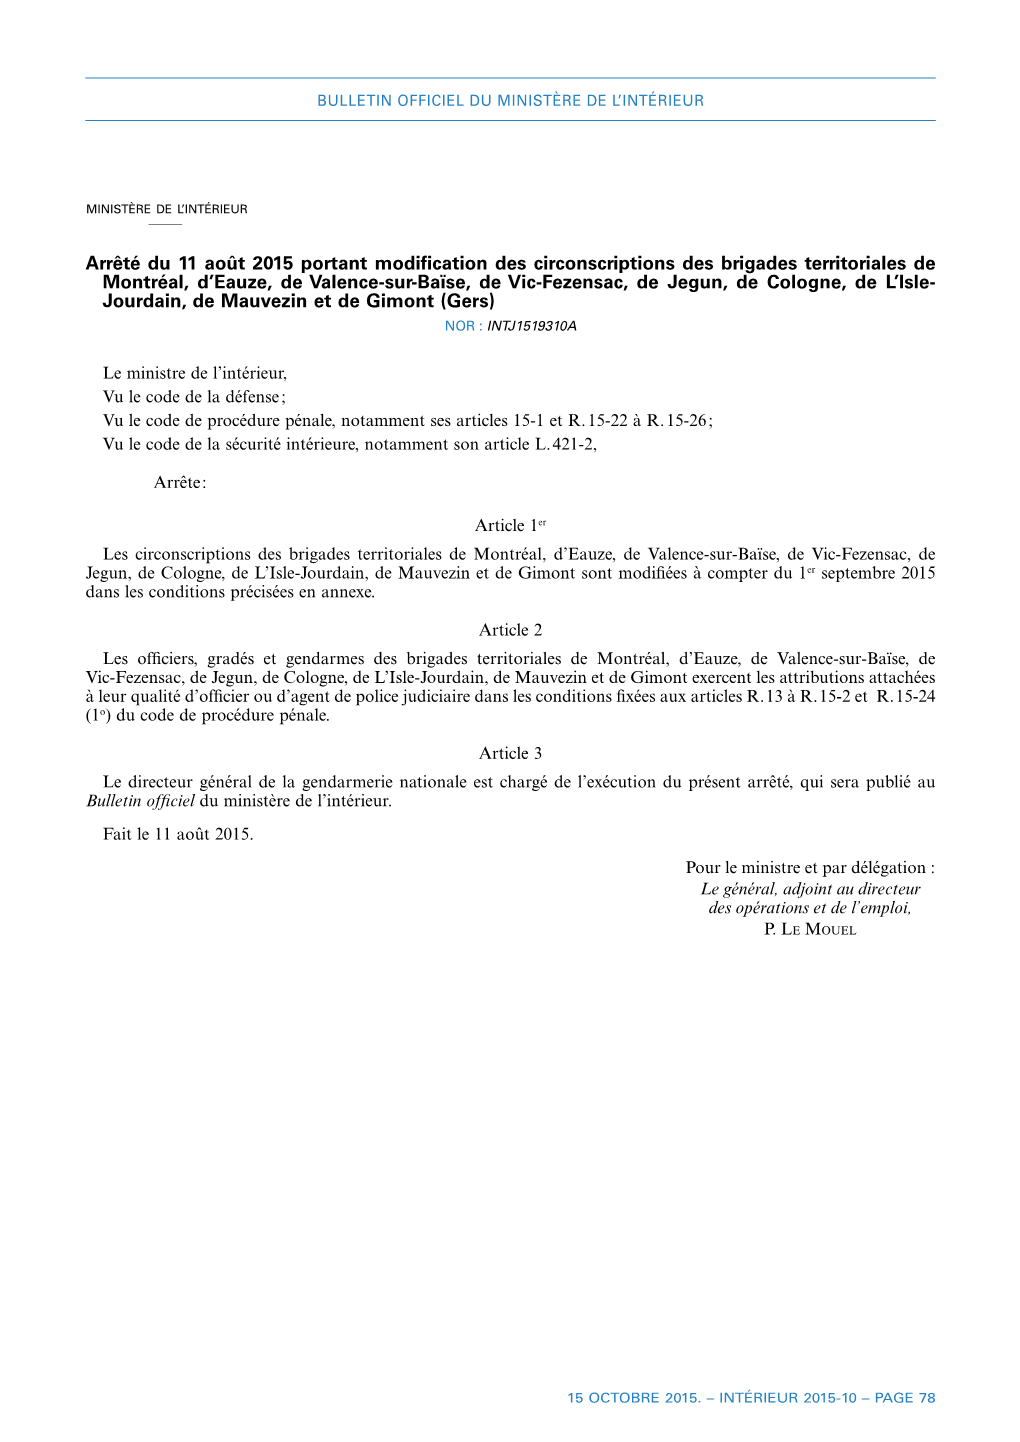 Arrêté Du 11 Août 2015 Portant Modification Des Circonscriptions